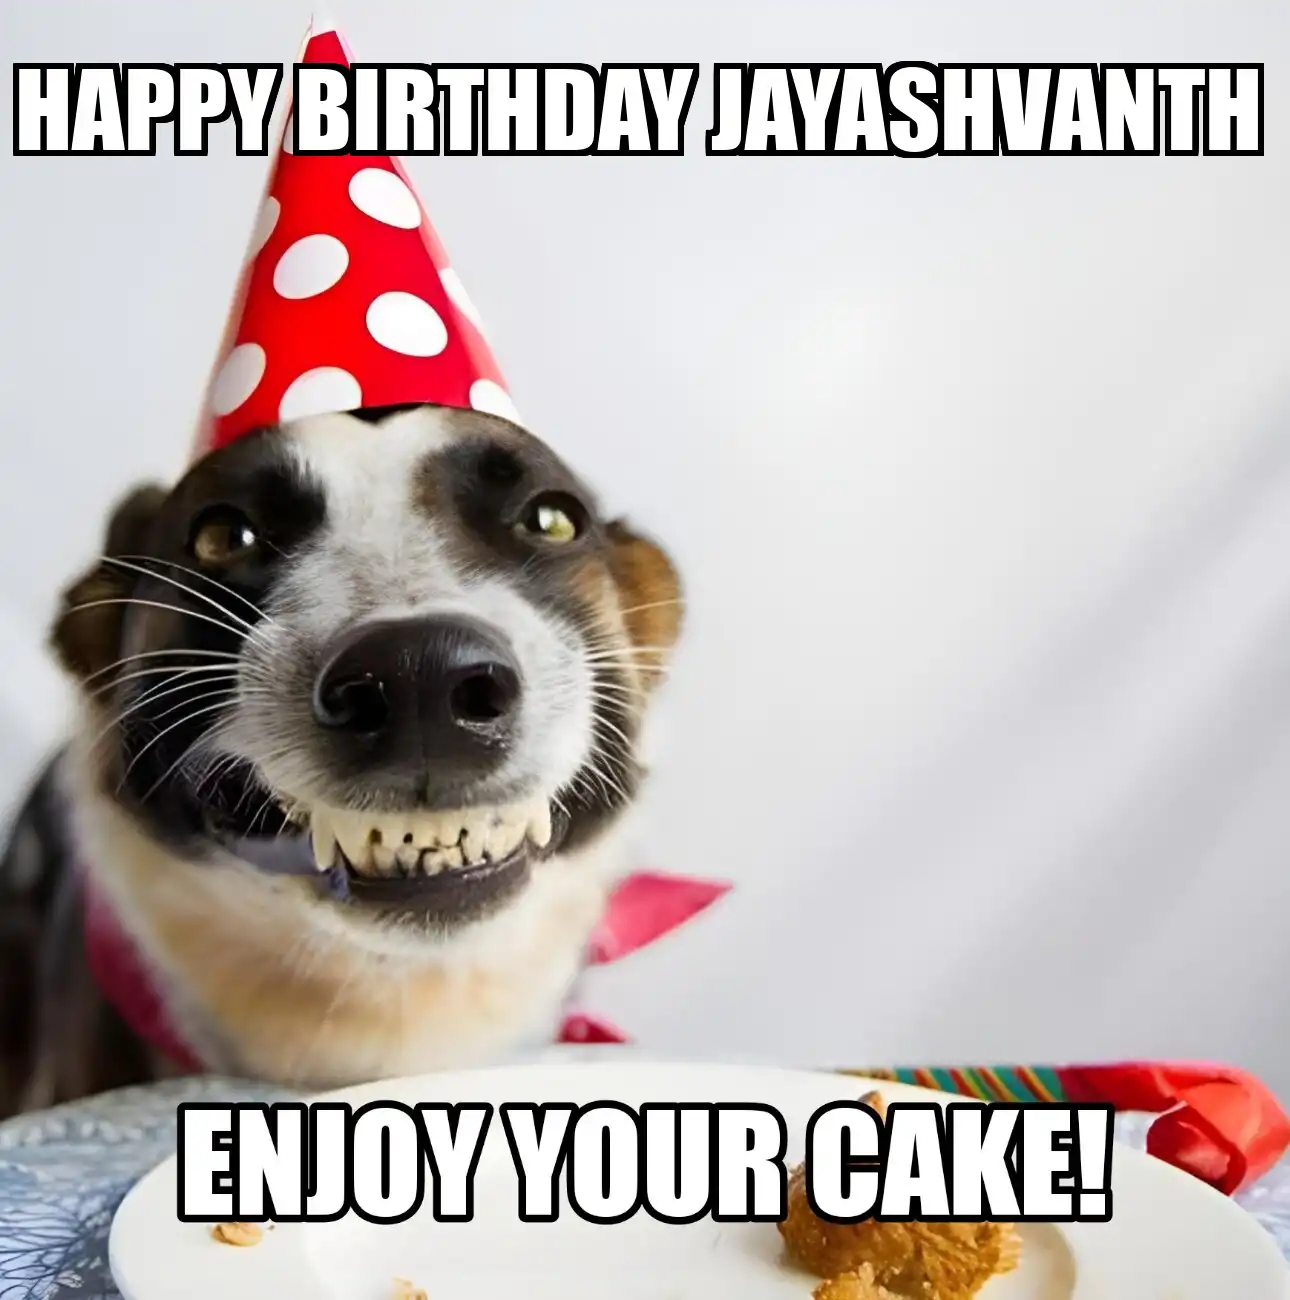 Happy Birthday Jayashvanth Enjoy Your Cake Dog Meme